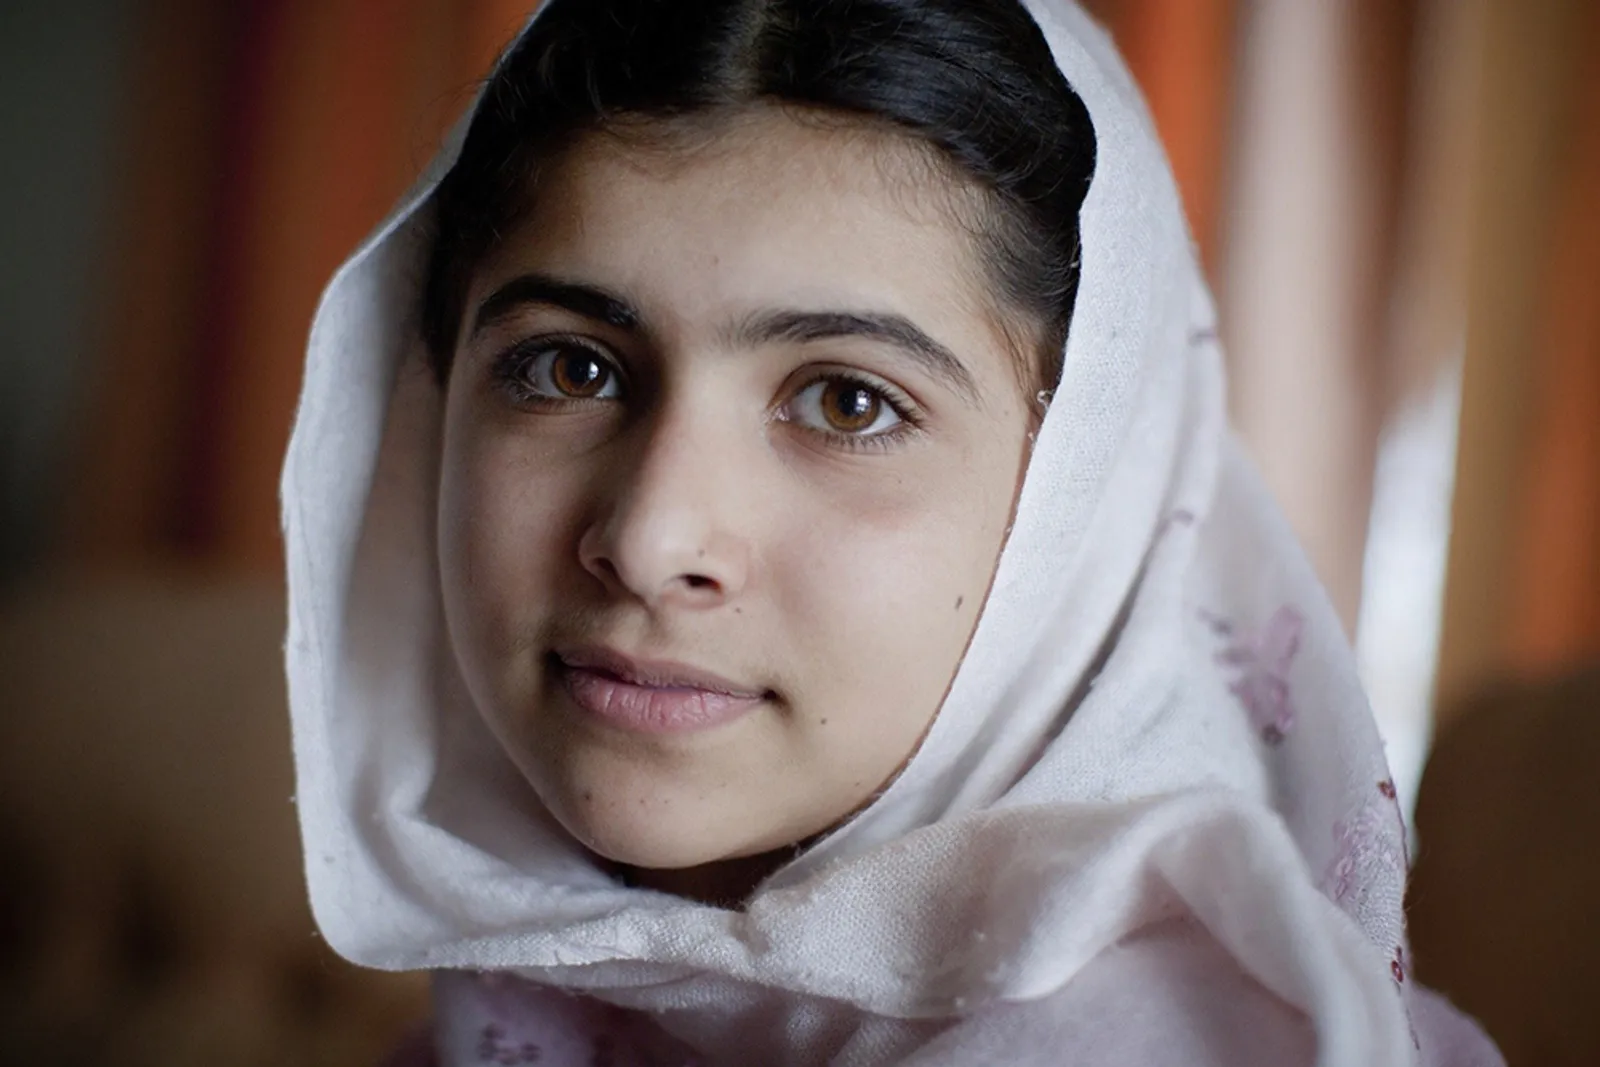 Ini 5 Tips dari Malala Yousafzai Agar Kamu Jadi Perempuan Hebat